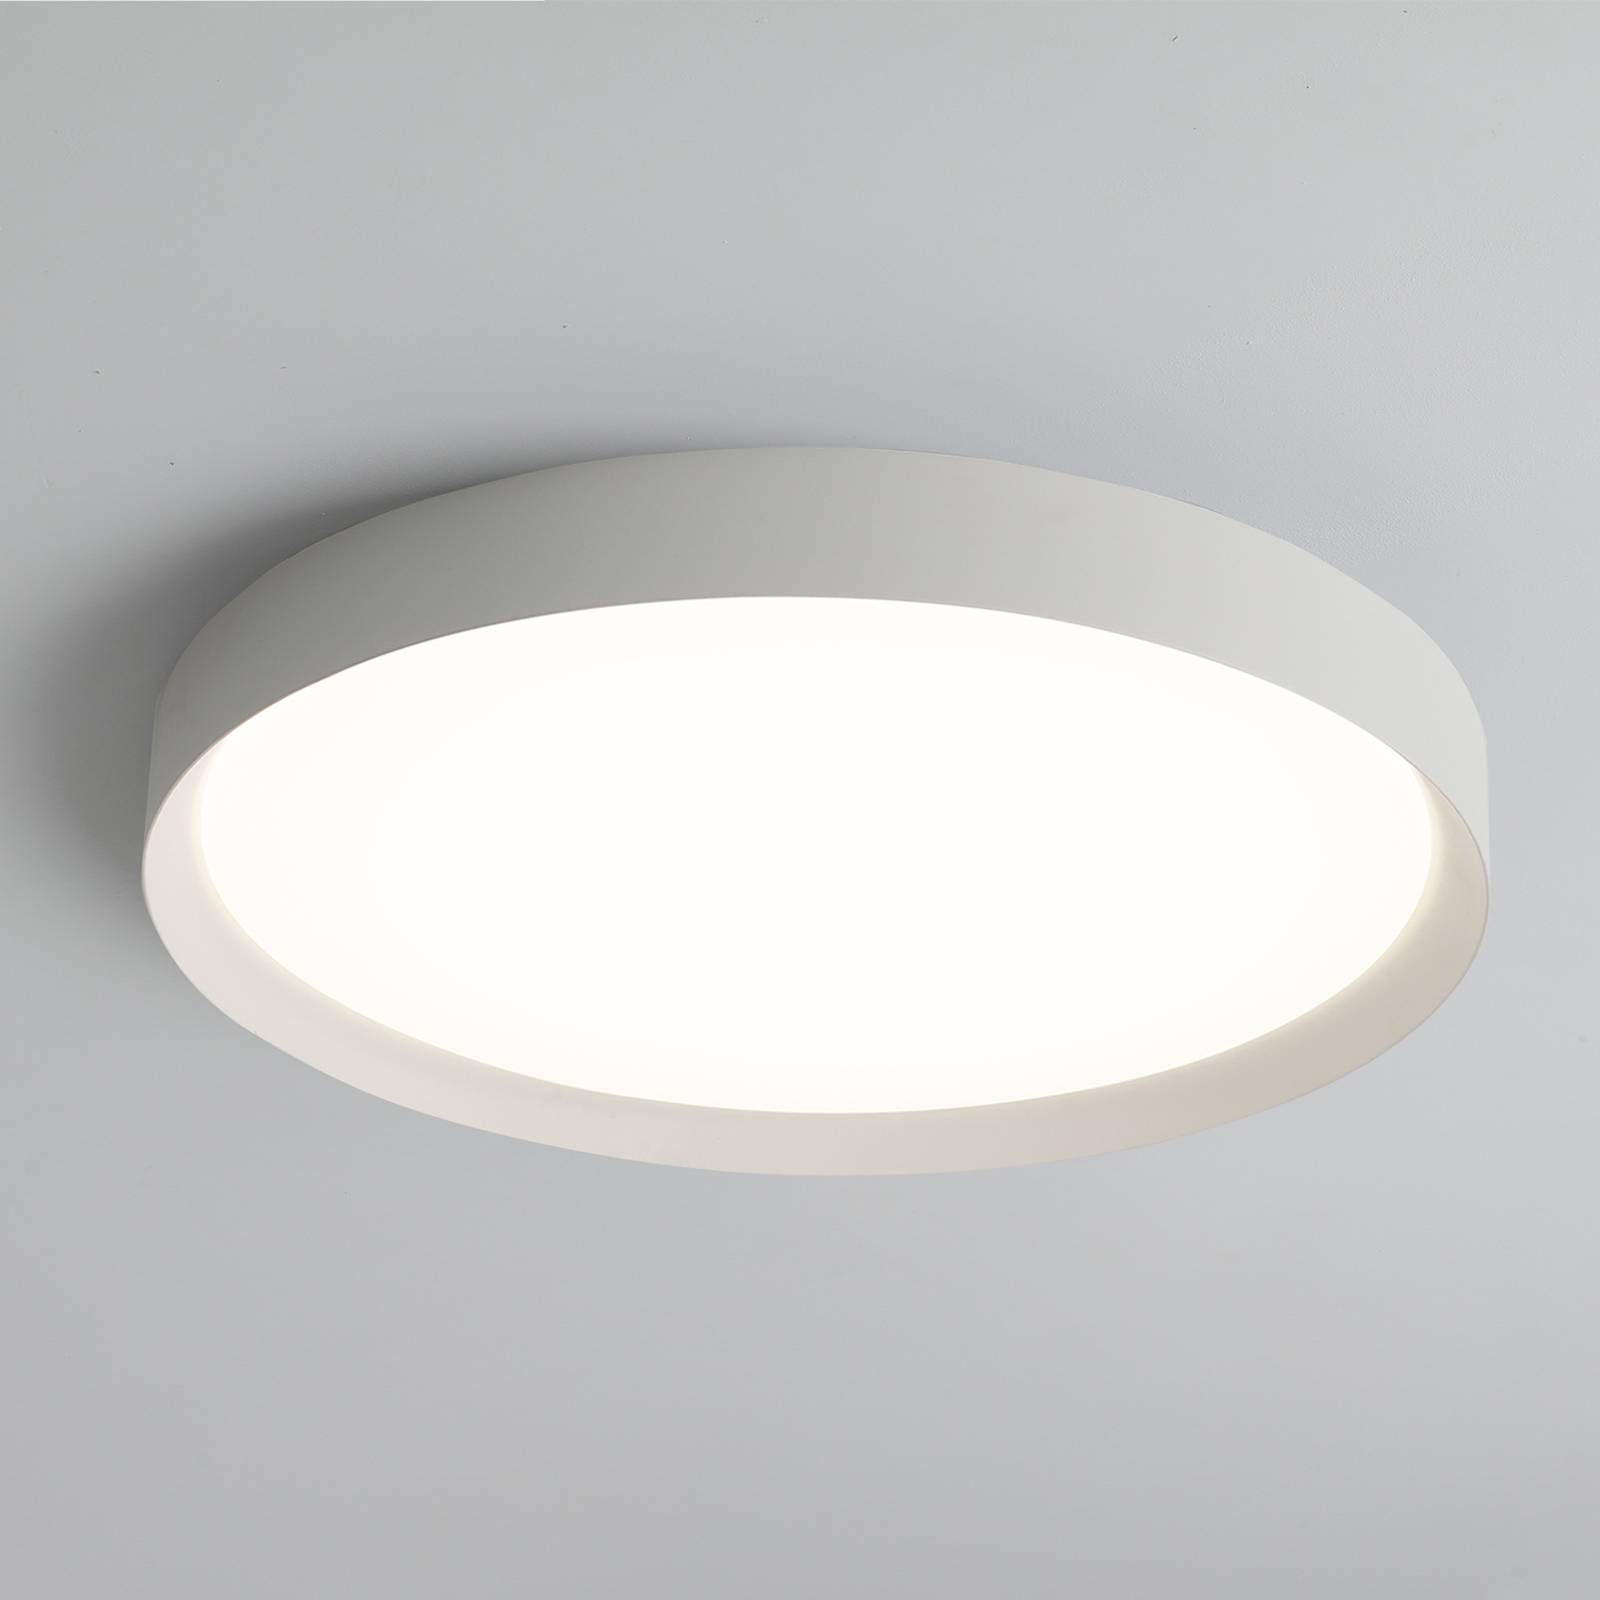 E-shop LED stropné svietidlo Minsk, Ø 60 cm, Casambi, 42 W, biele